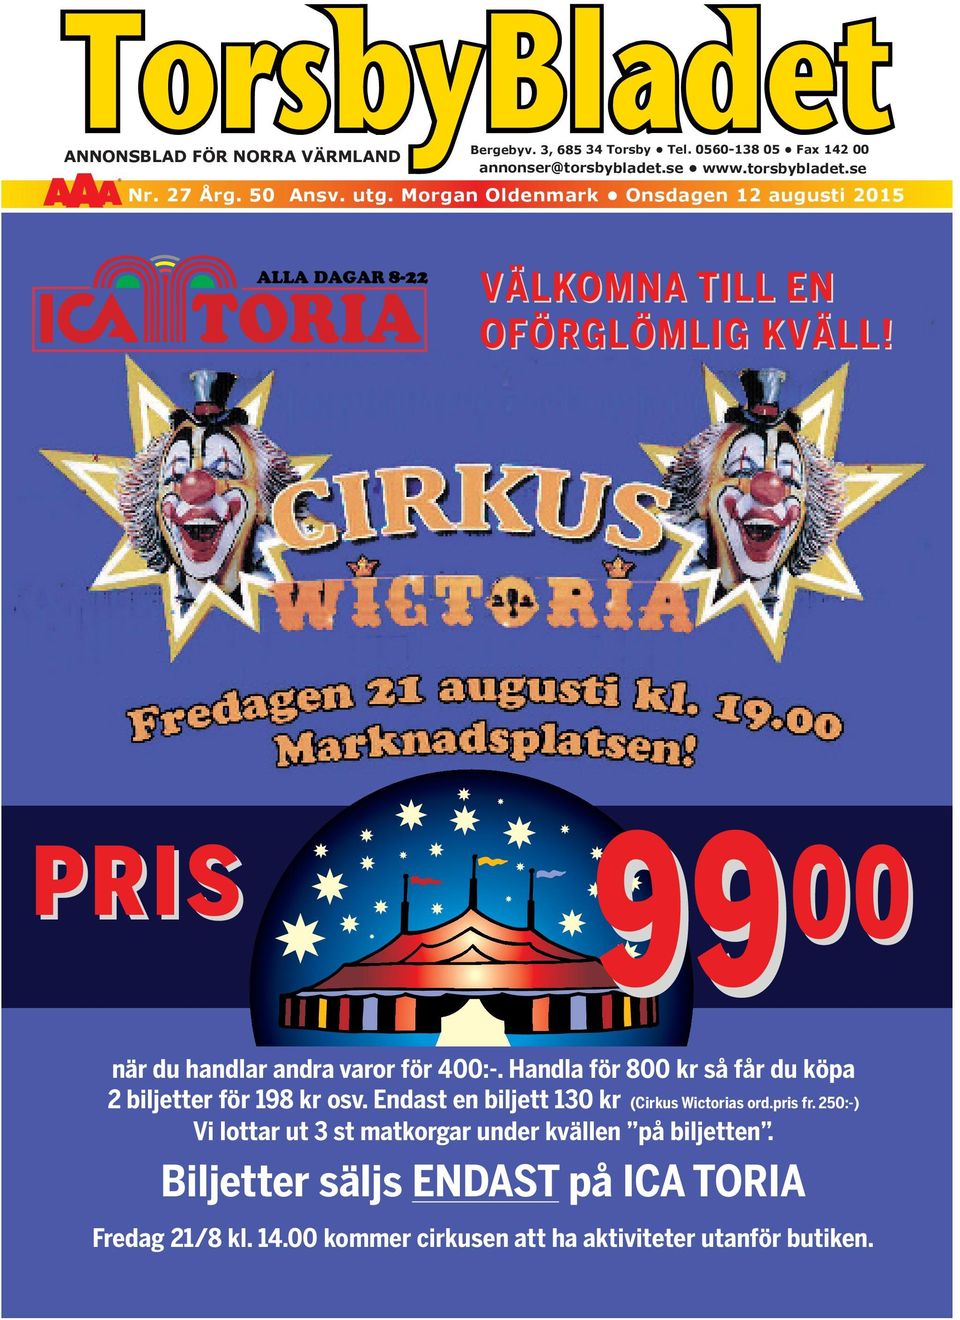 Endast en biljett 130 kr (Cirkus Wictorias ord.pris fr.